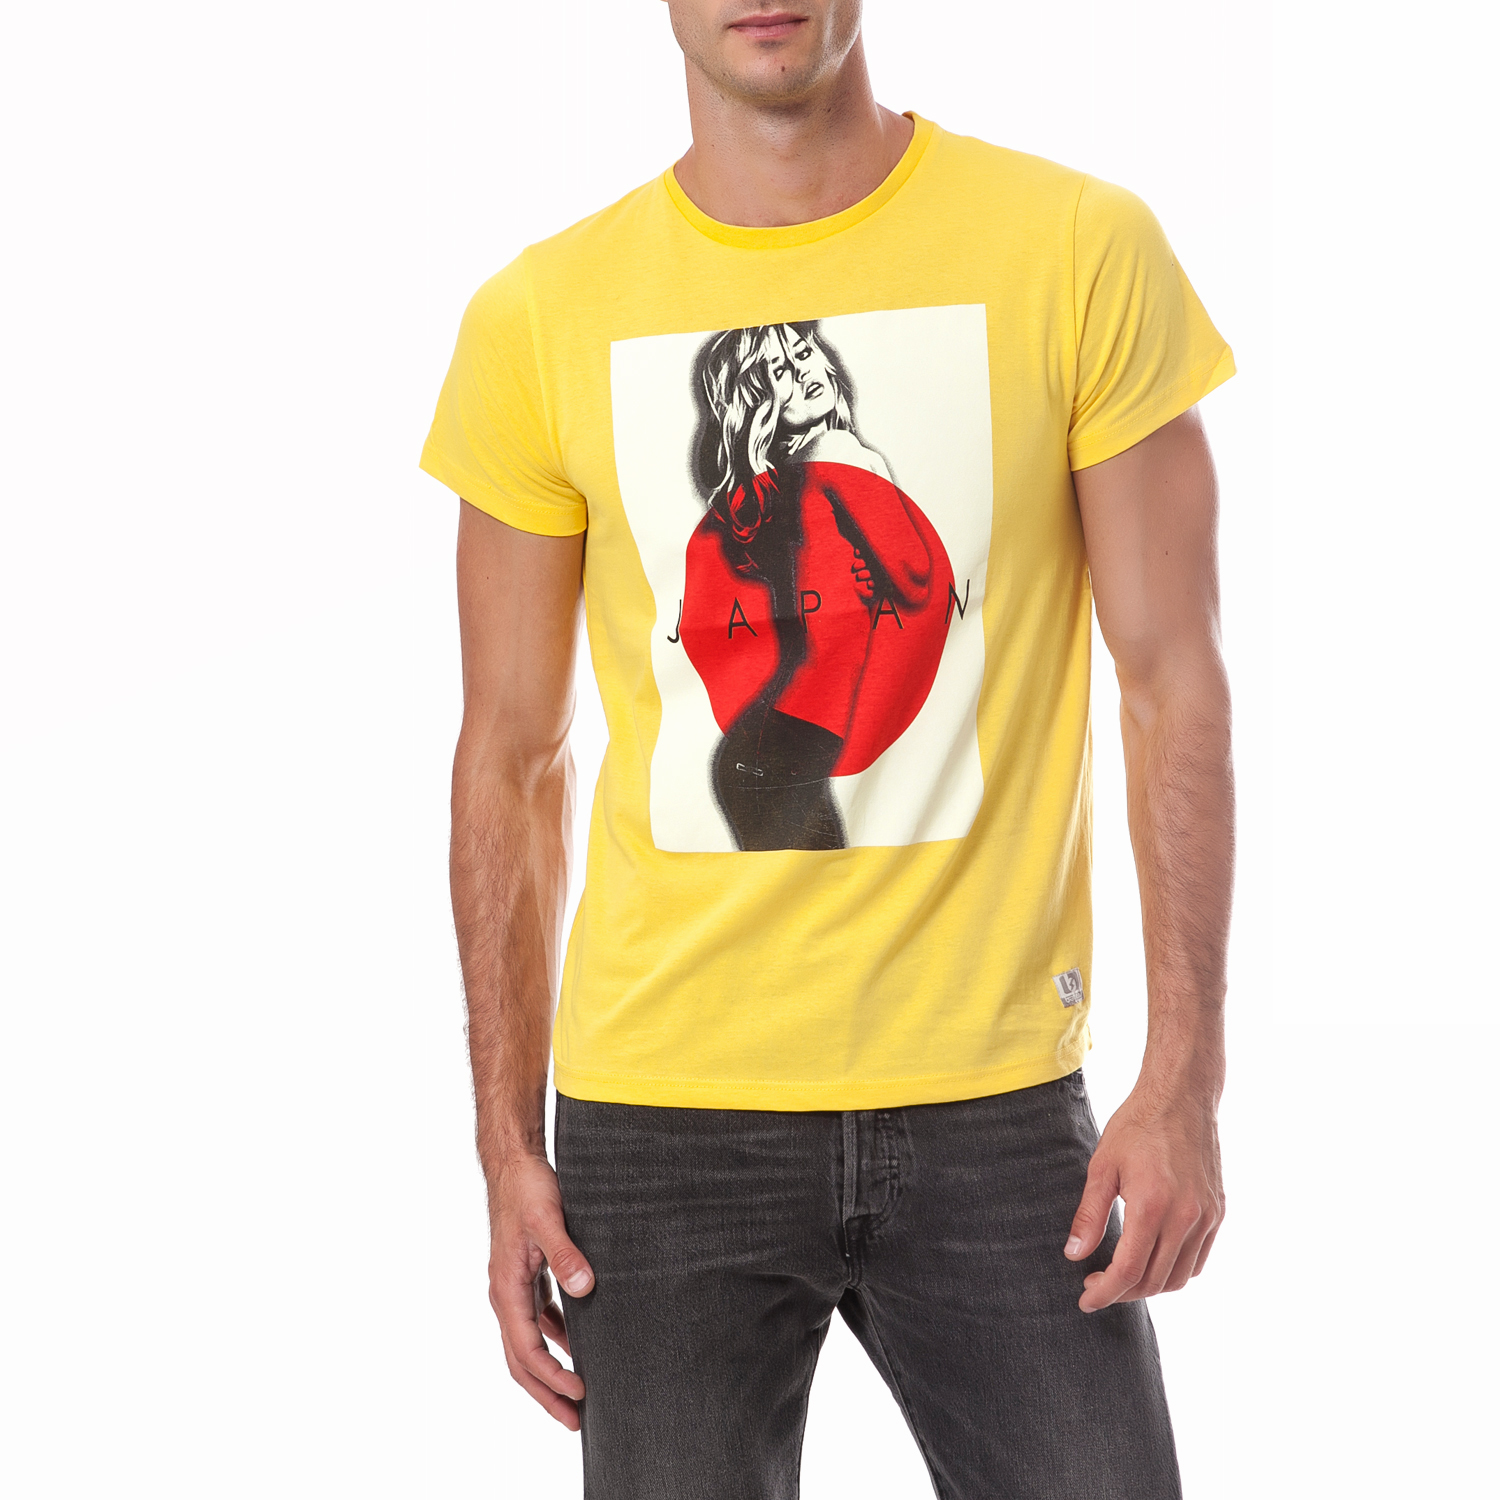 Ανδρικά/Ρούχα/Μπλούζες/Κοντομάνικες BATTERY - Ανδρική μπλούζα Battery κίτρινη